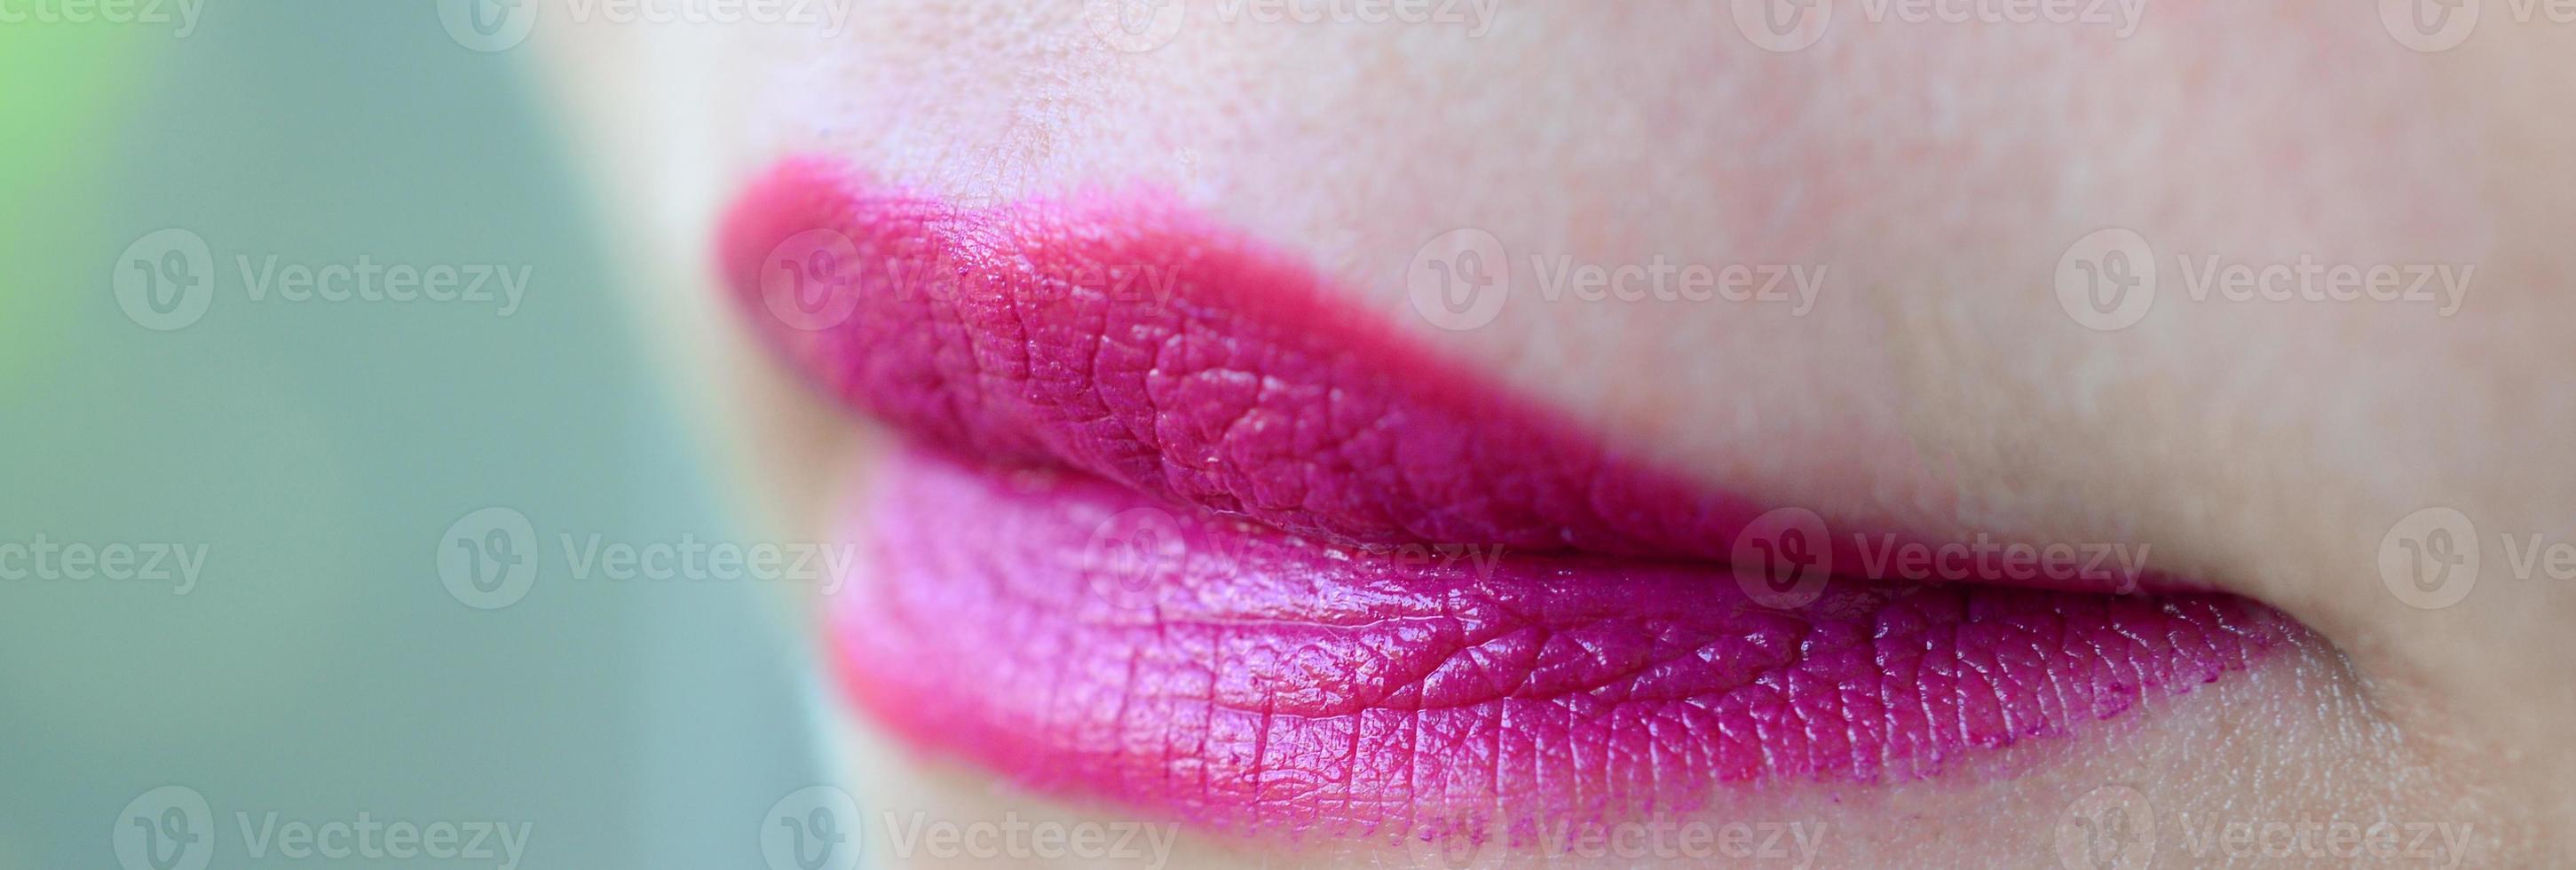 gros plan de lèvres de femme avec du rouge à lèvres fuchsia brillant photo